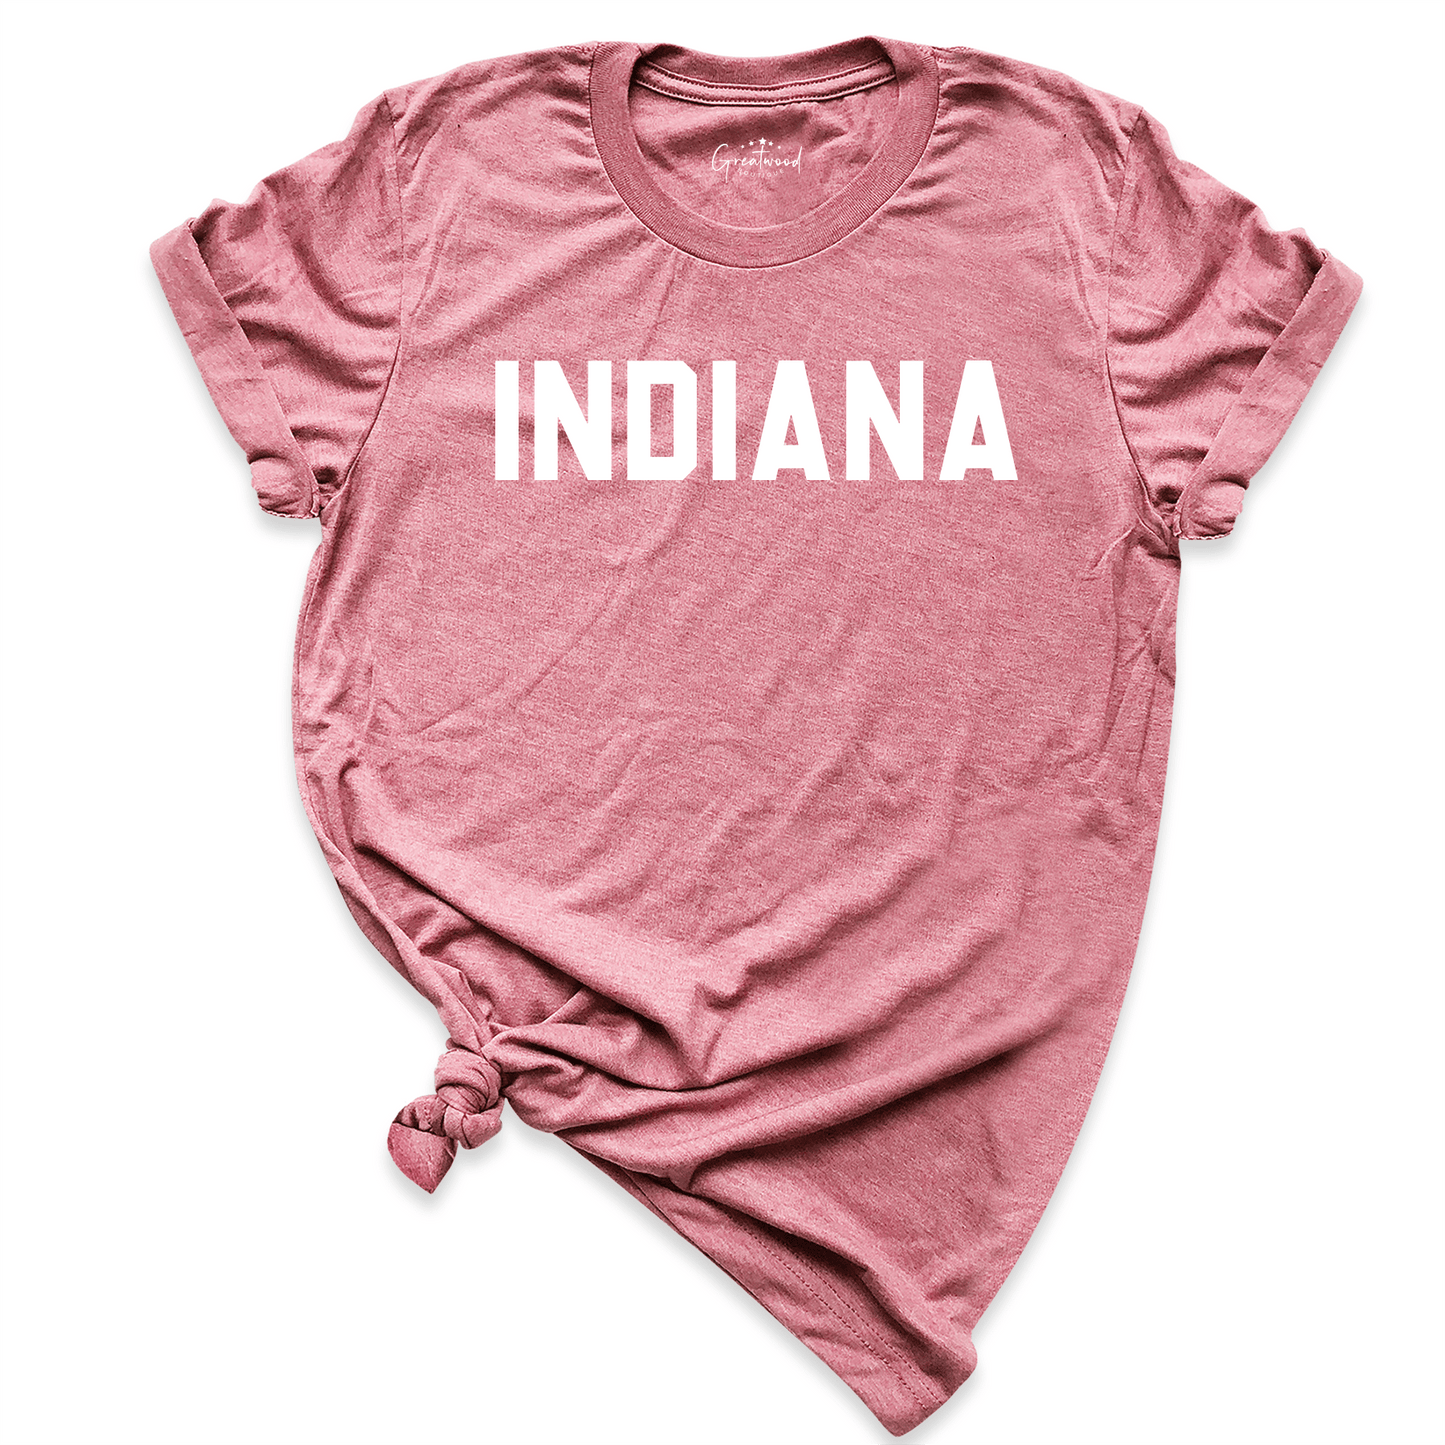 Indiana Shirt